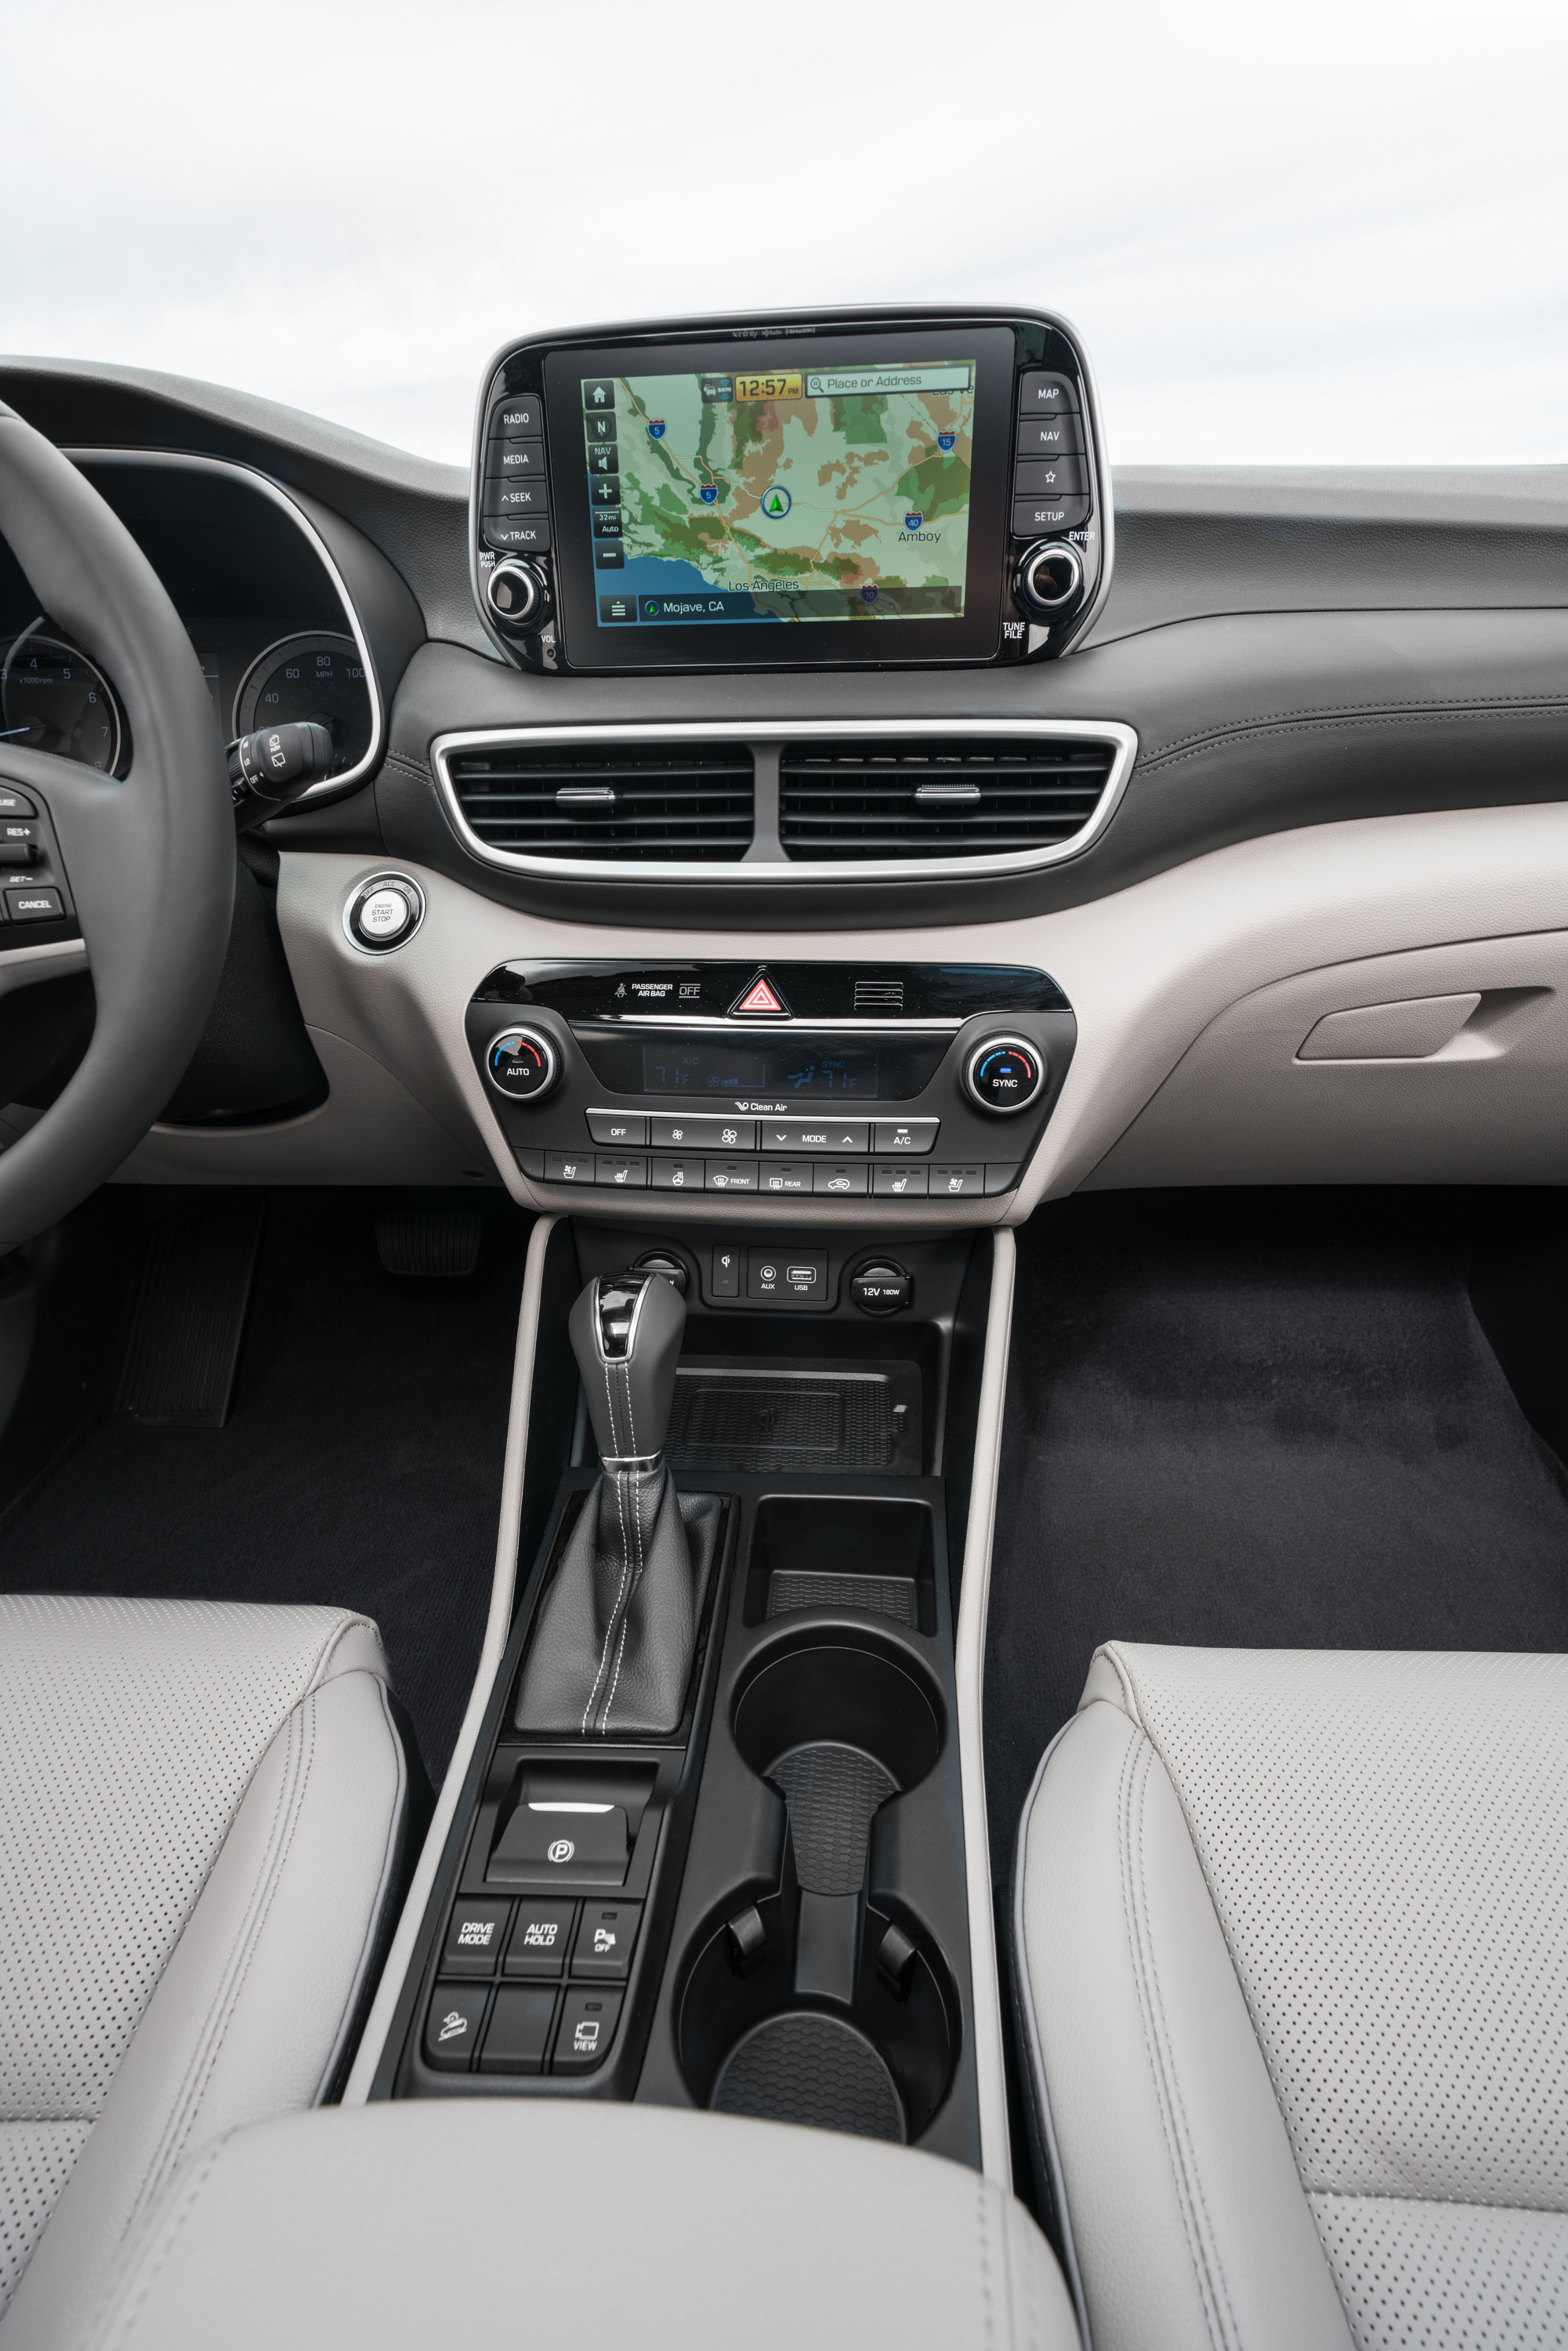 Hyundai Tucson interior specifications